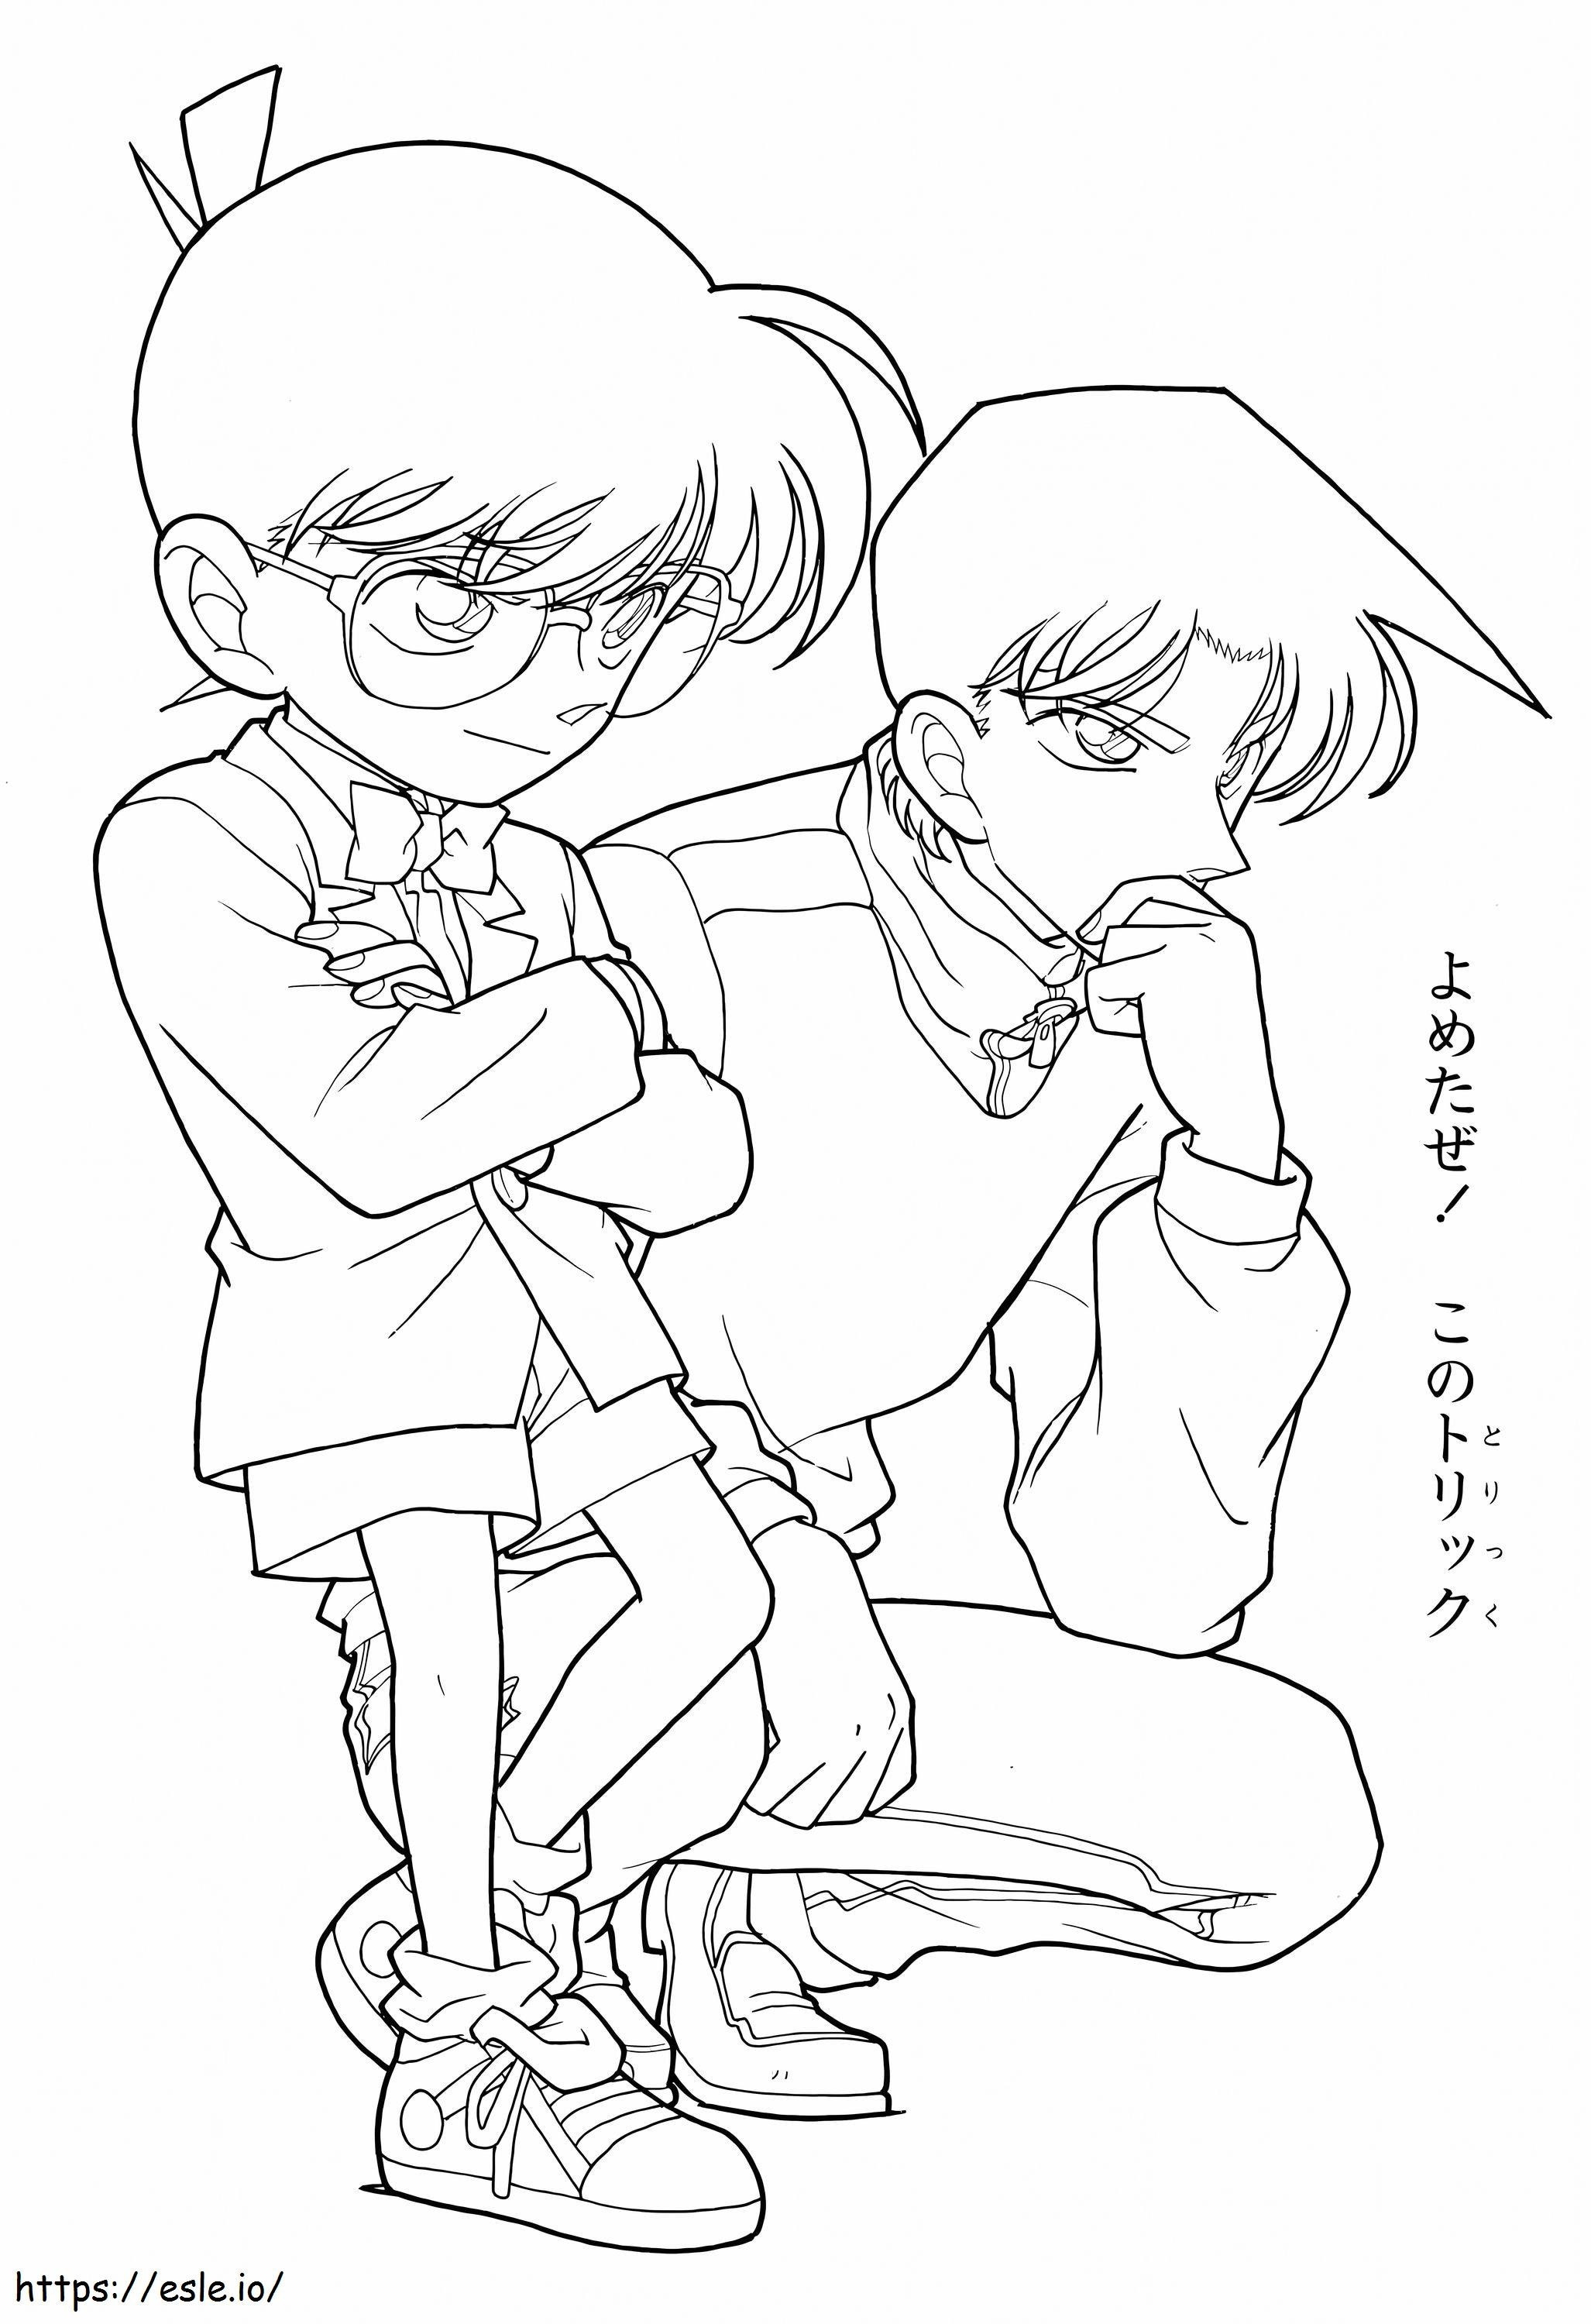 Conan und Shinichi ausmalbilder